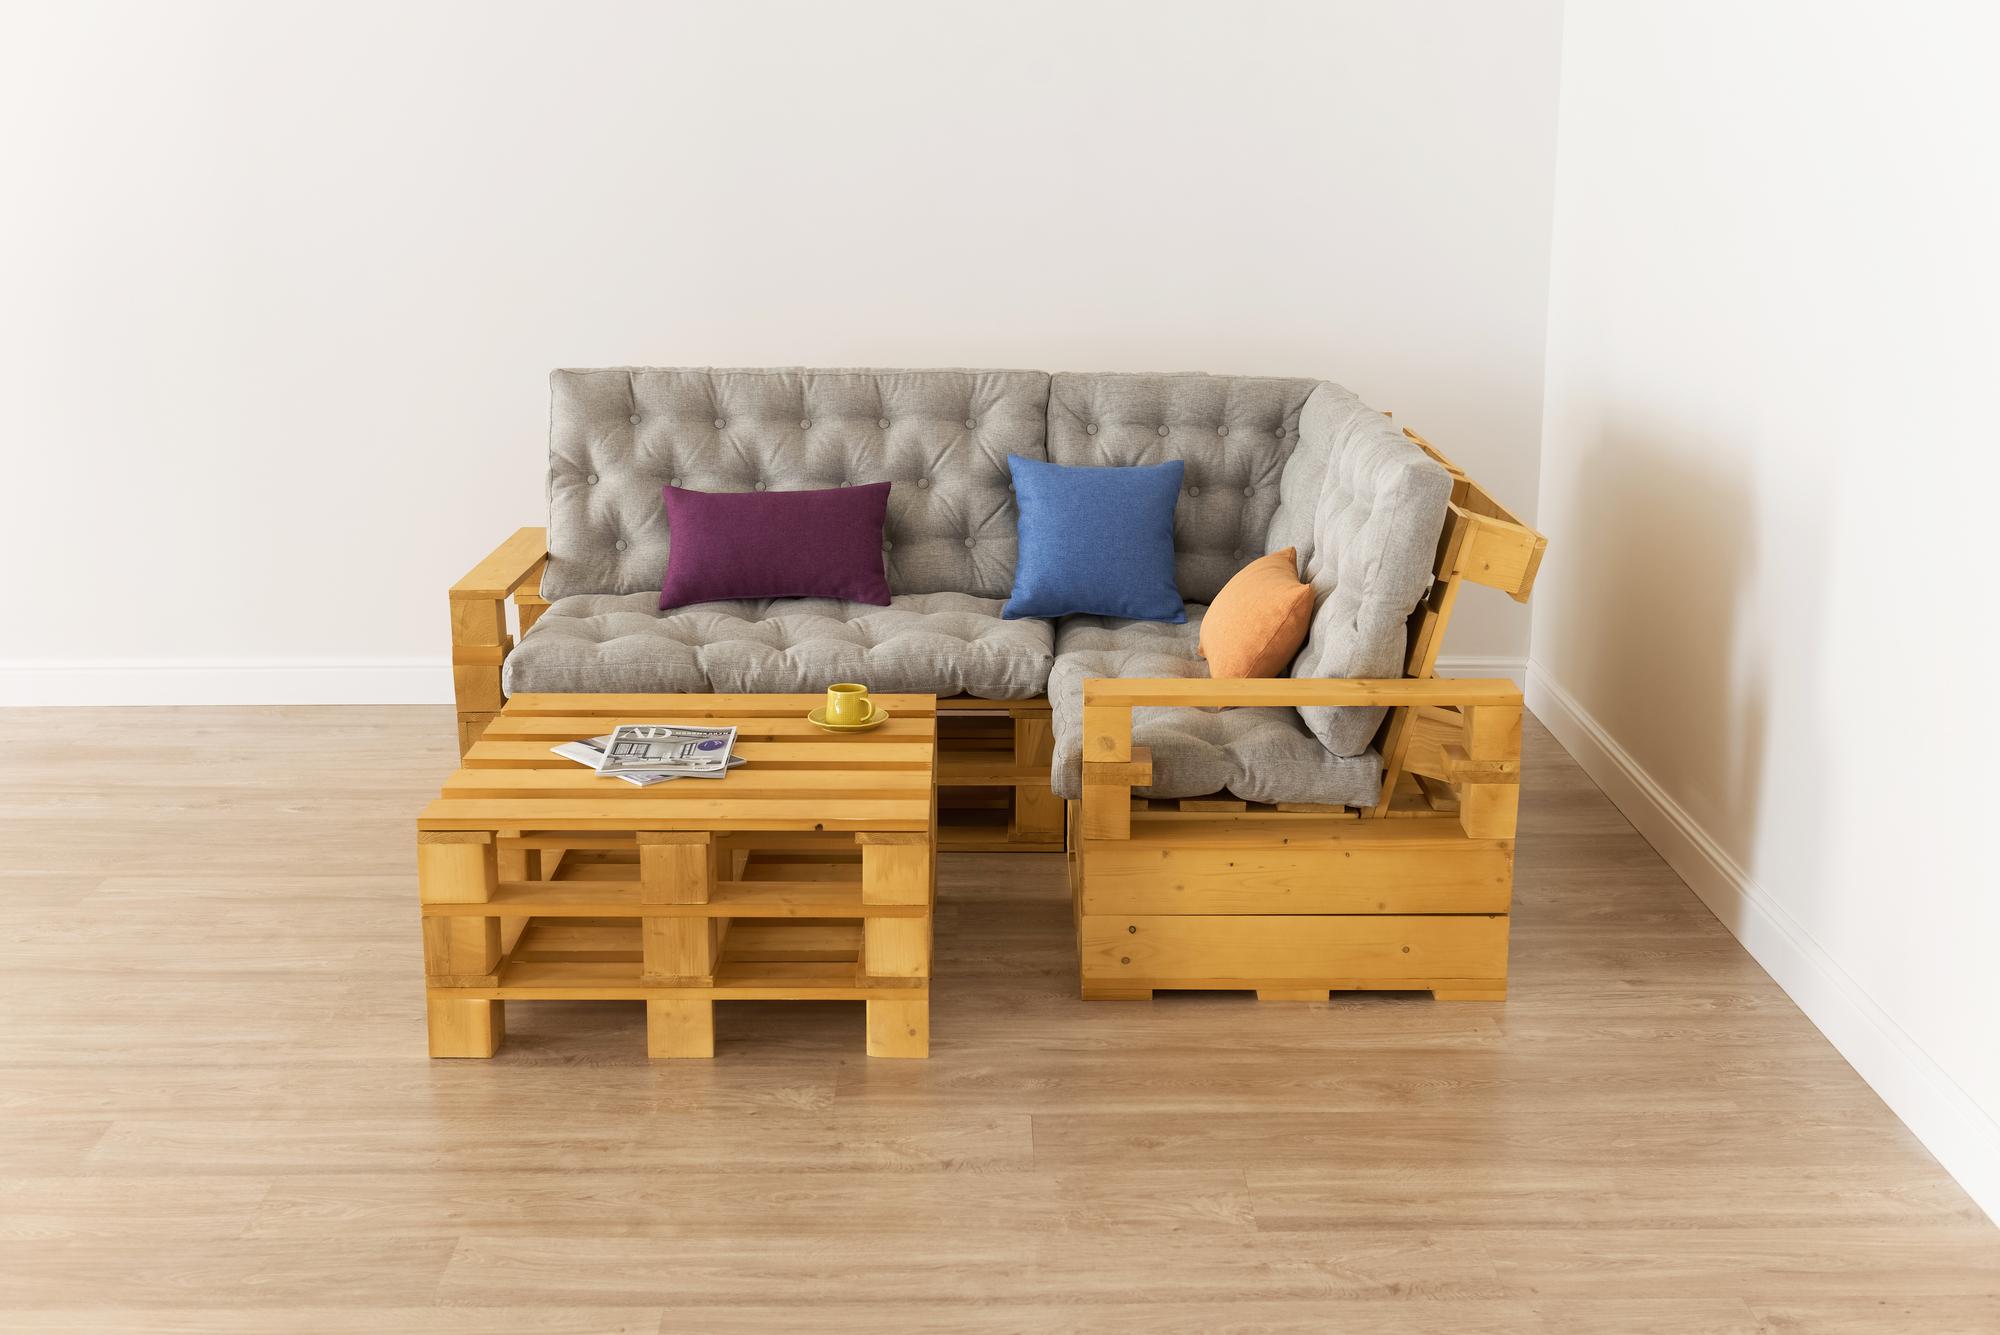 Купить Подлокотник + Диван 70 + угловой диван + диван 110 + подлокотник + стол от производителя “Архитектория” фото №2